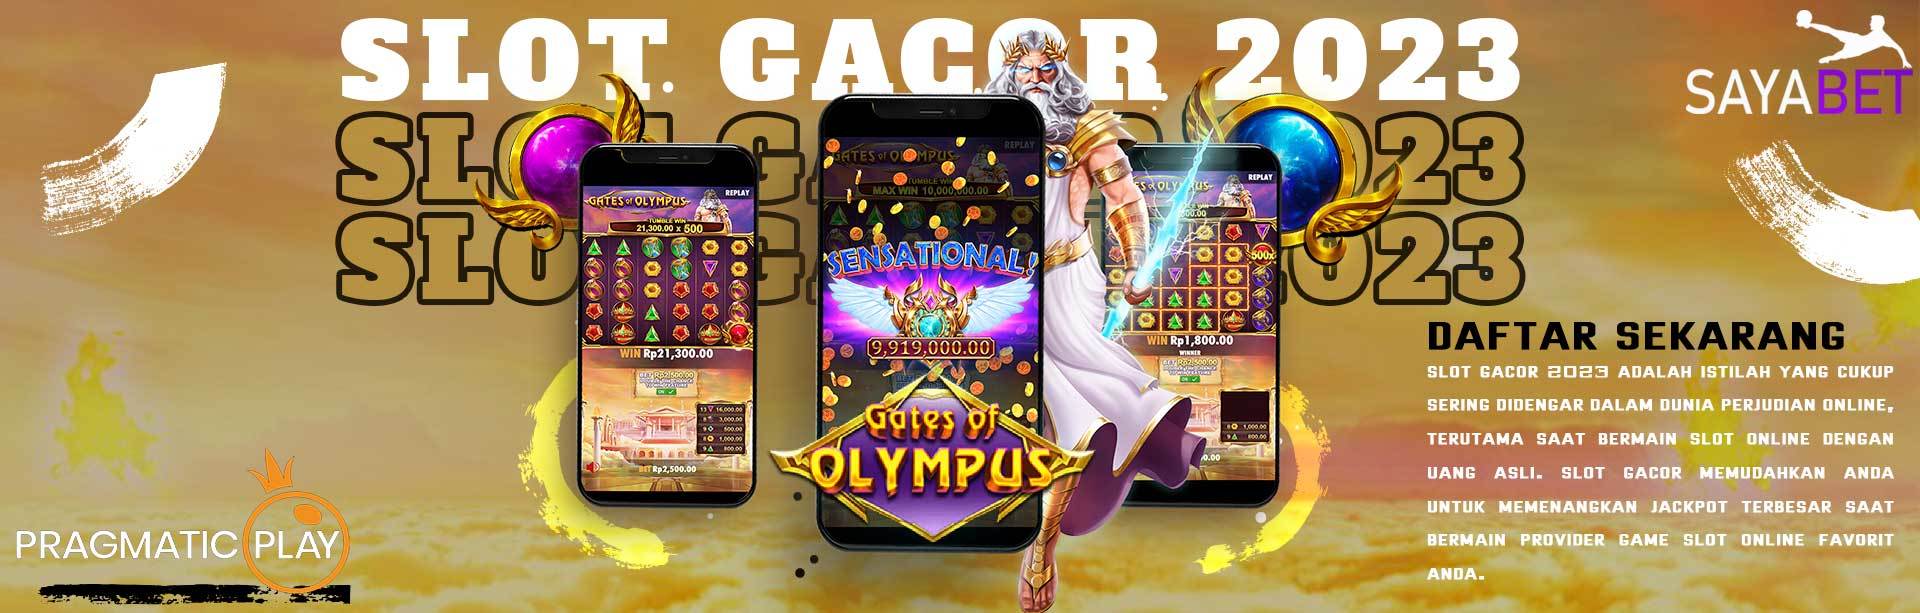 Kumpulan Game Slot Gacor 2023 di Situs Judi Online Indonesia